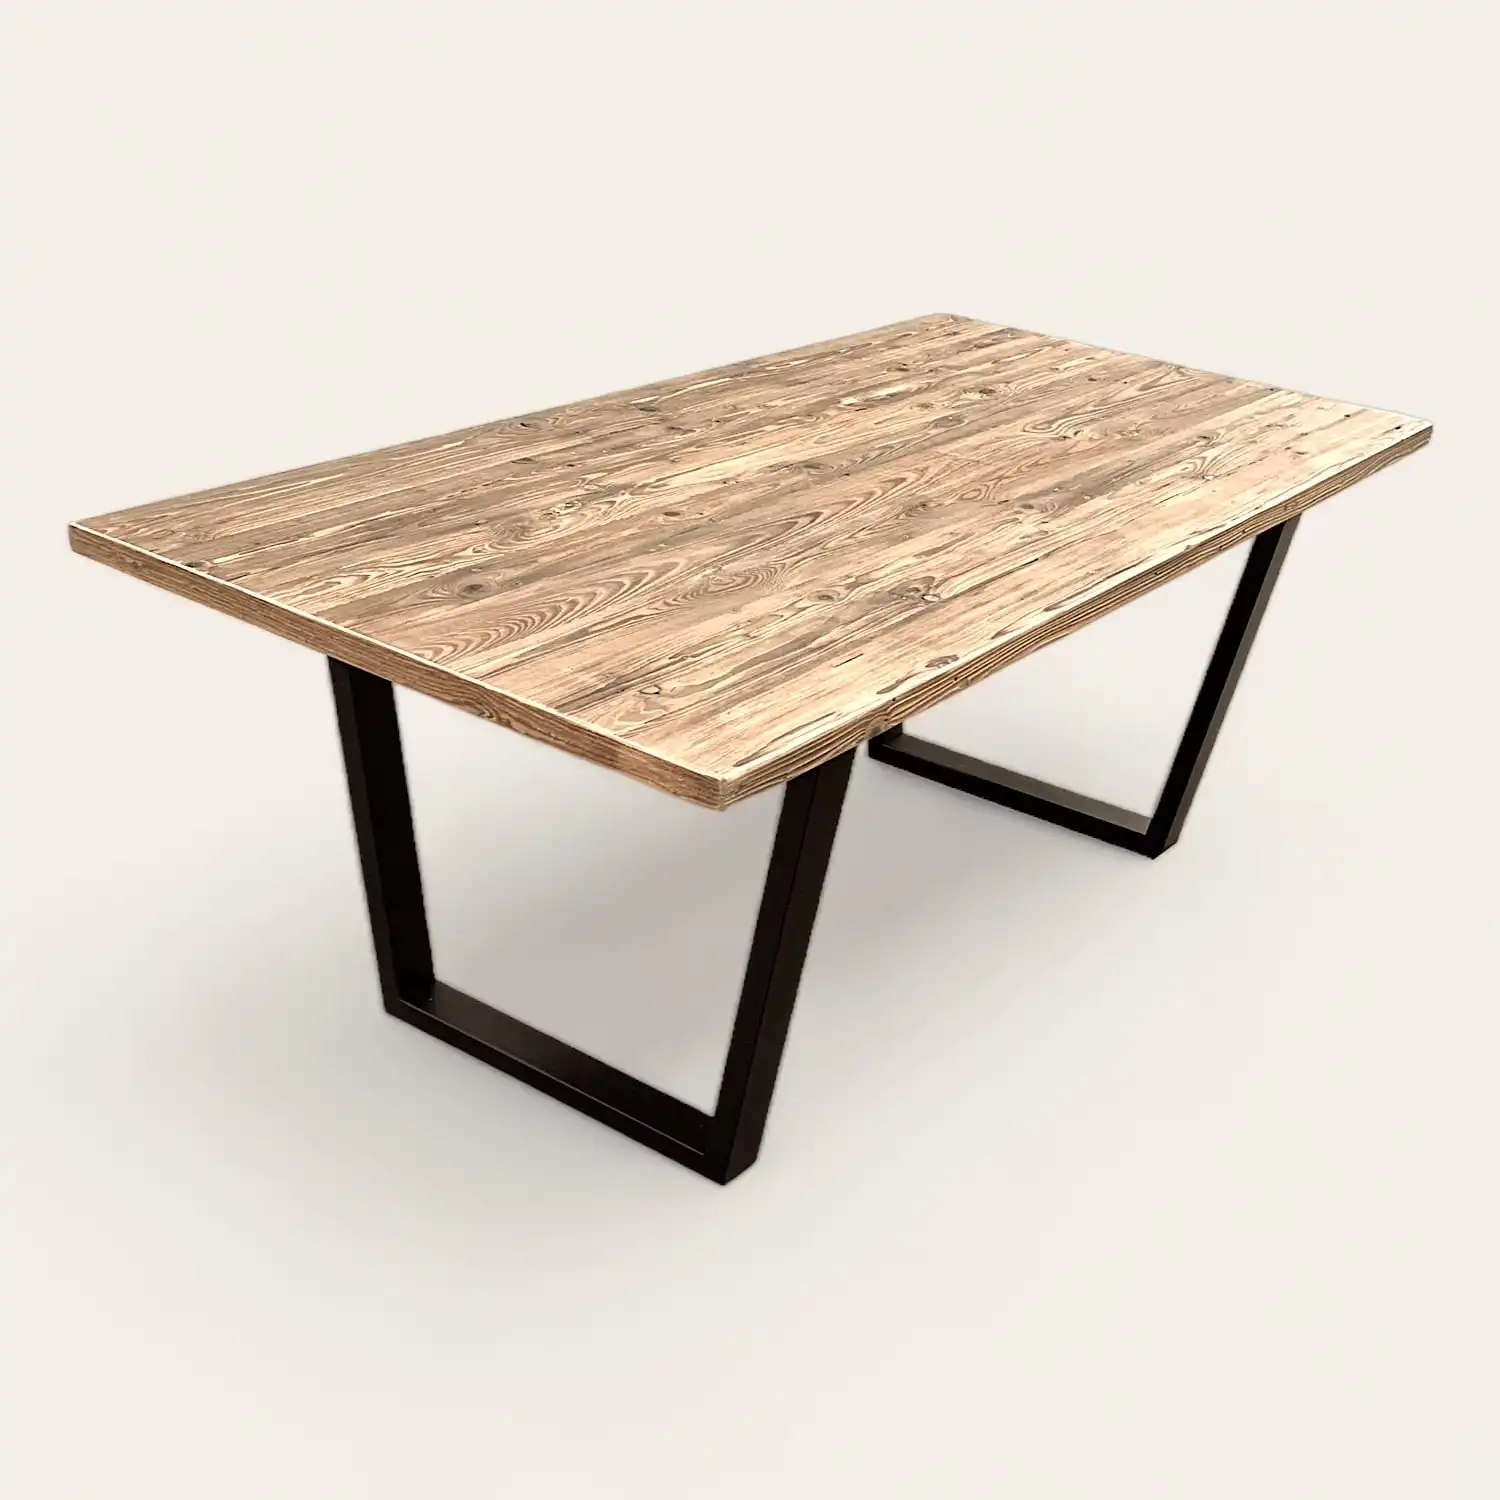  Une table à manger en bois rustique avec des pieds noirs sur fond blanc. 